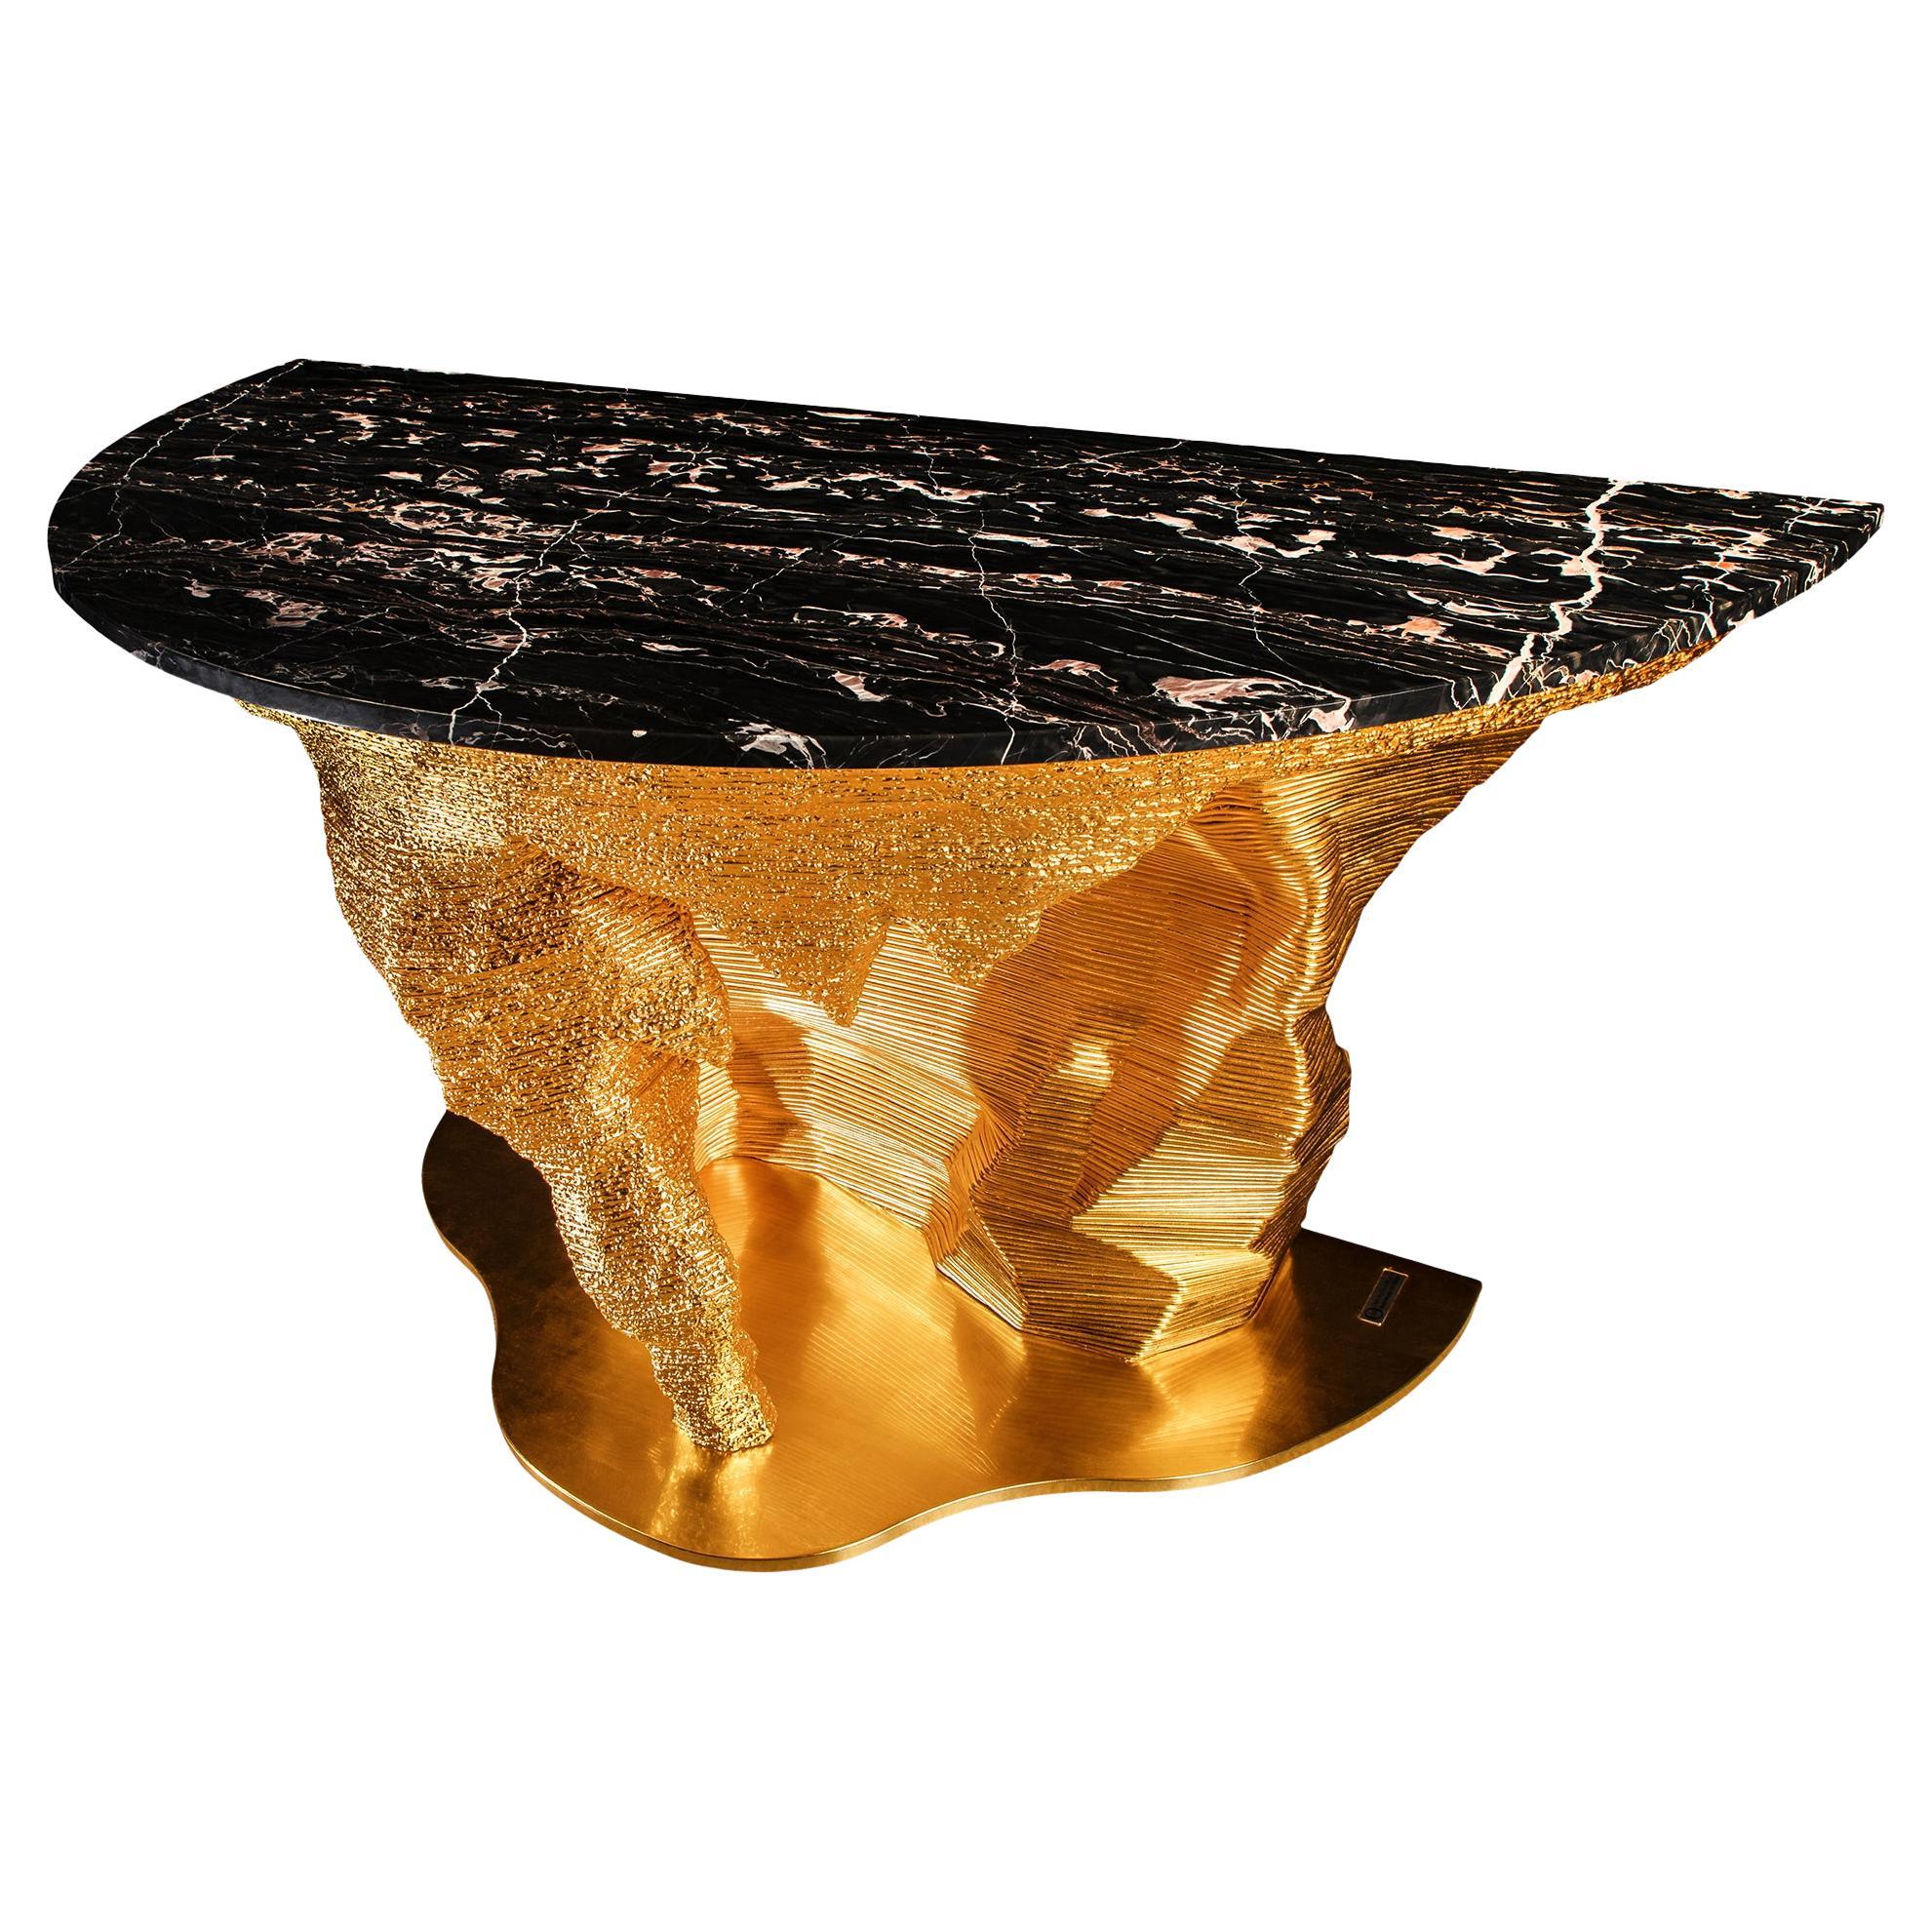 Portoro Marble "GoldMoon Meteorite" design by GiòPozzi for Officina della Scala For Sale